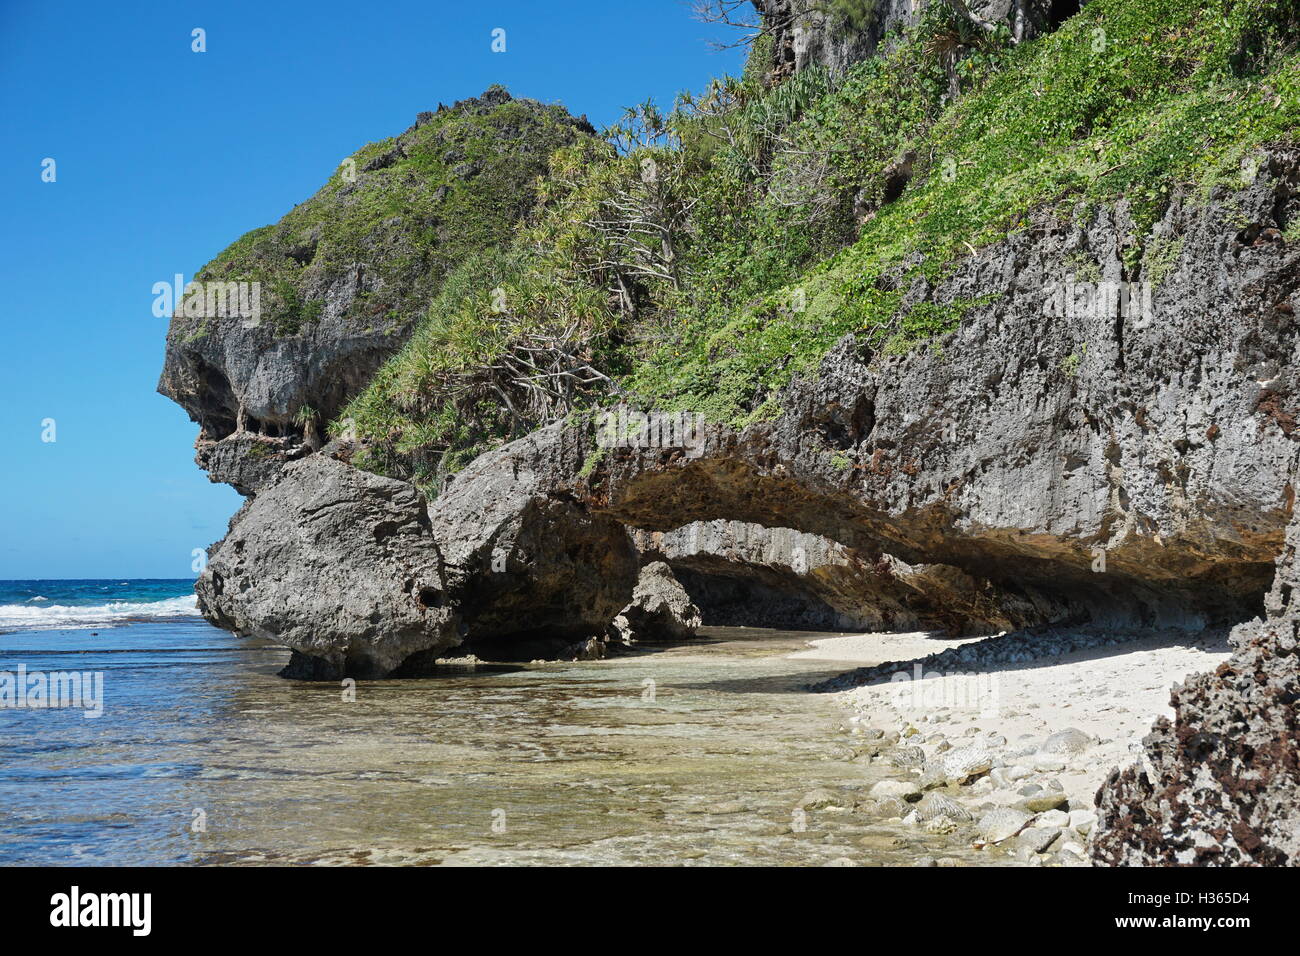 Acantilados de piedra caliza erosionada con un arco natural en la costa del océano Pacífico, Isla de Rurutu, austral archipiélago, Polinesia Francesa Foto de stock